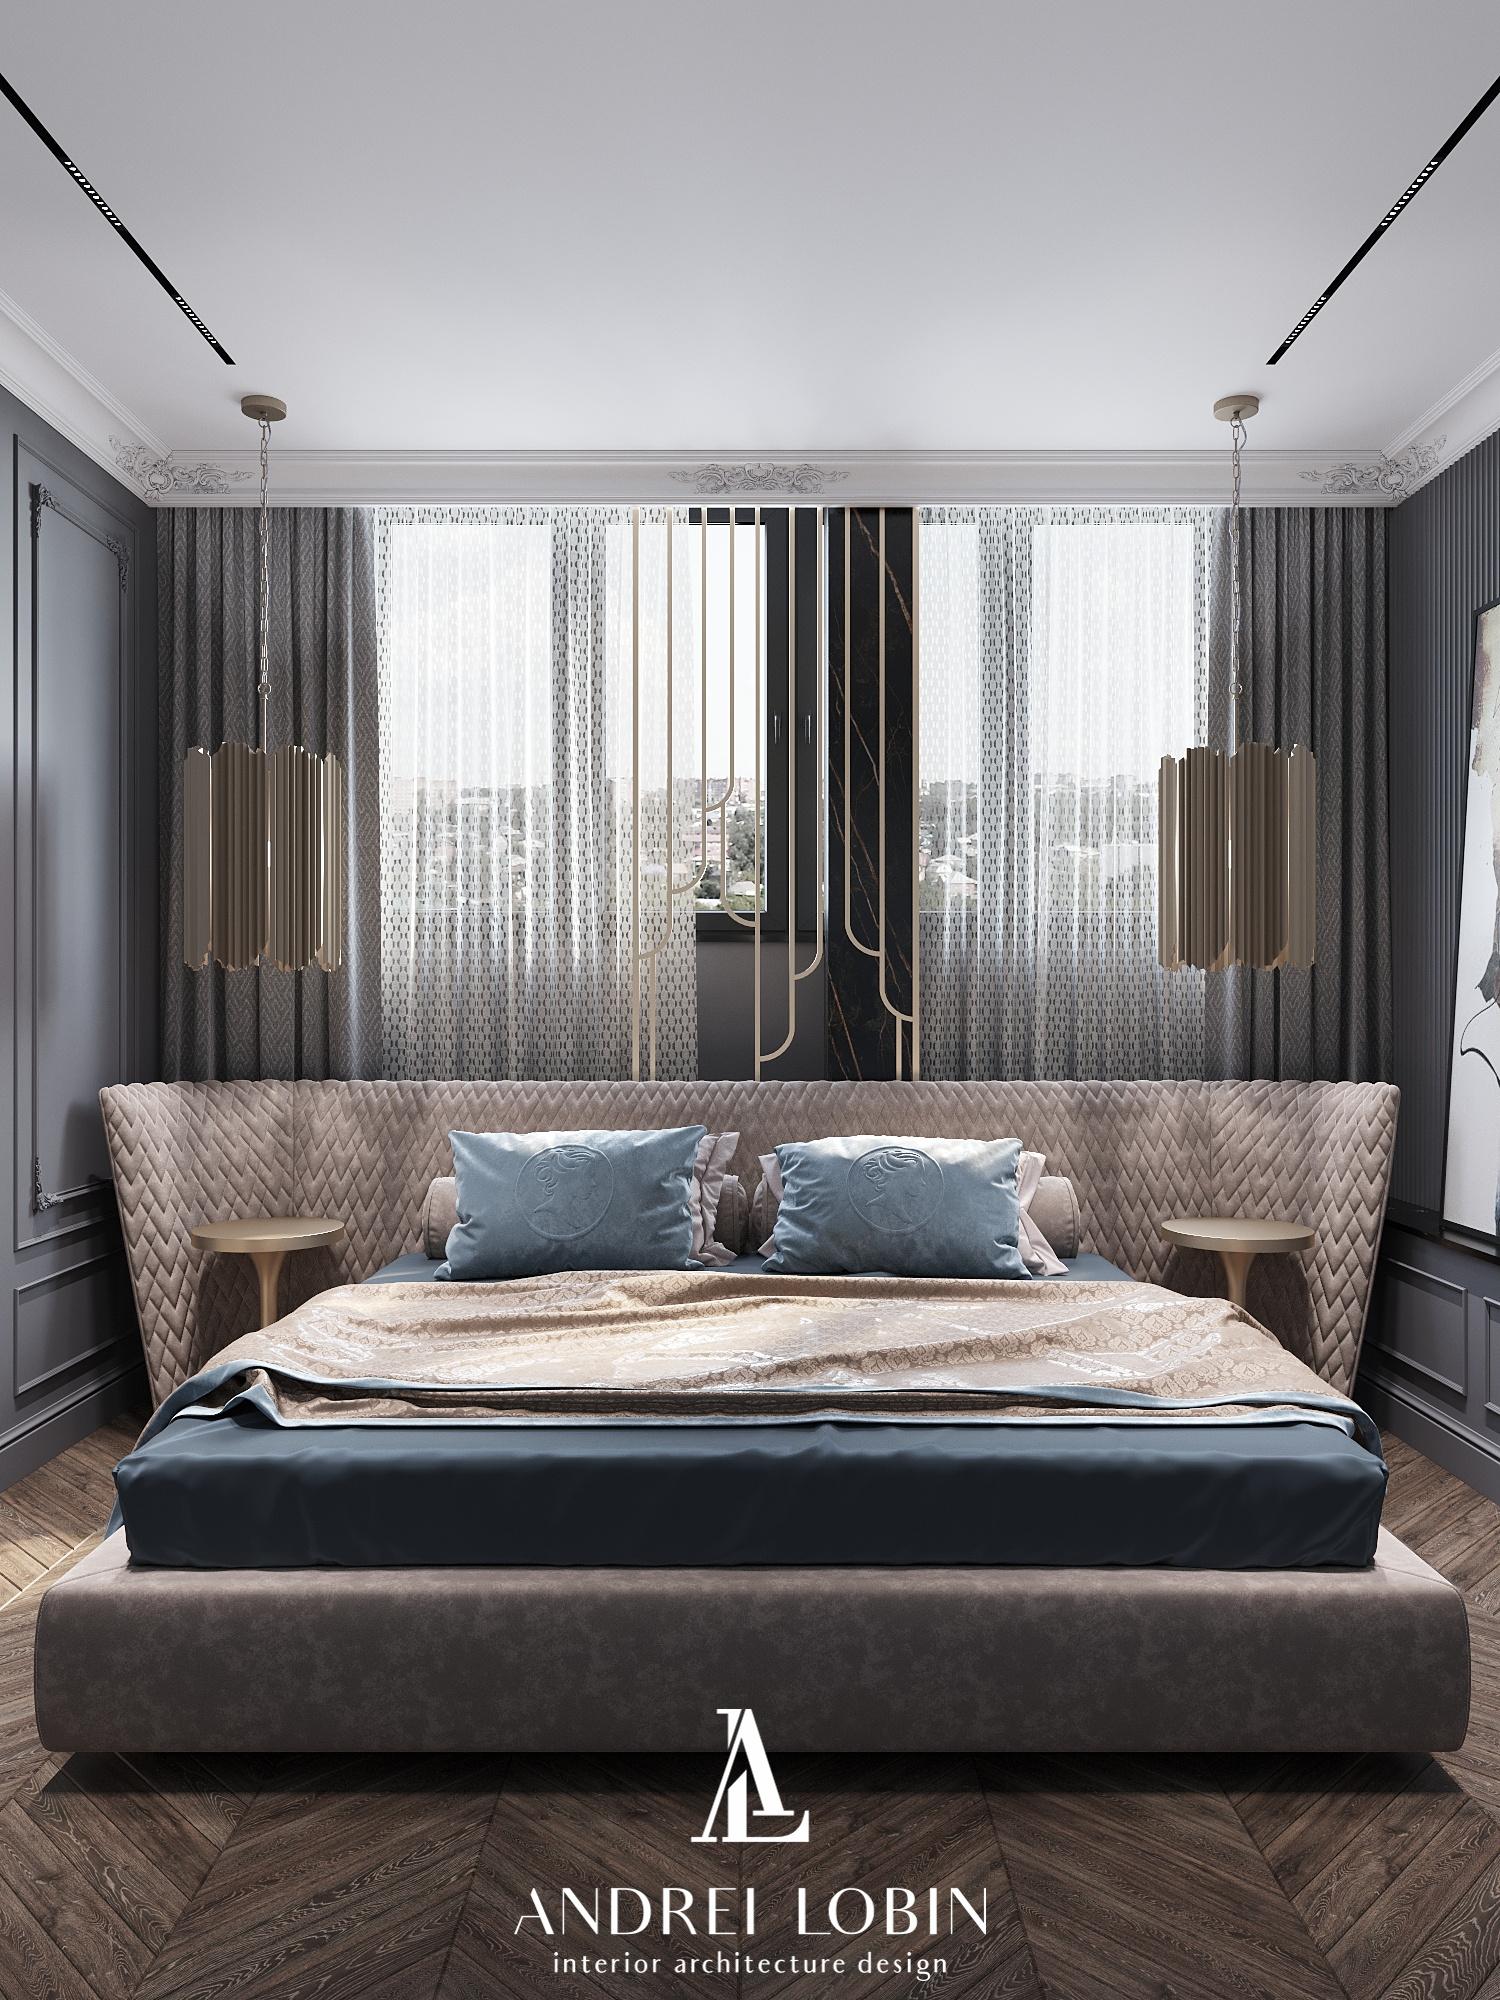 Интерьер спальни с бра над кроватью и светильниками над кроватью в классическом стиле, в стиле лофт и готике